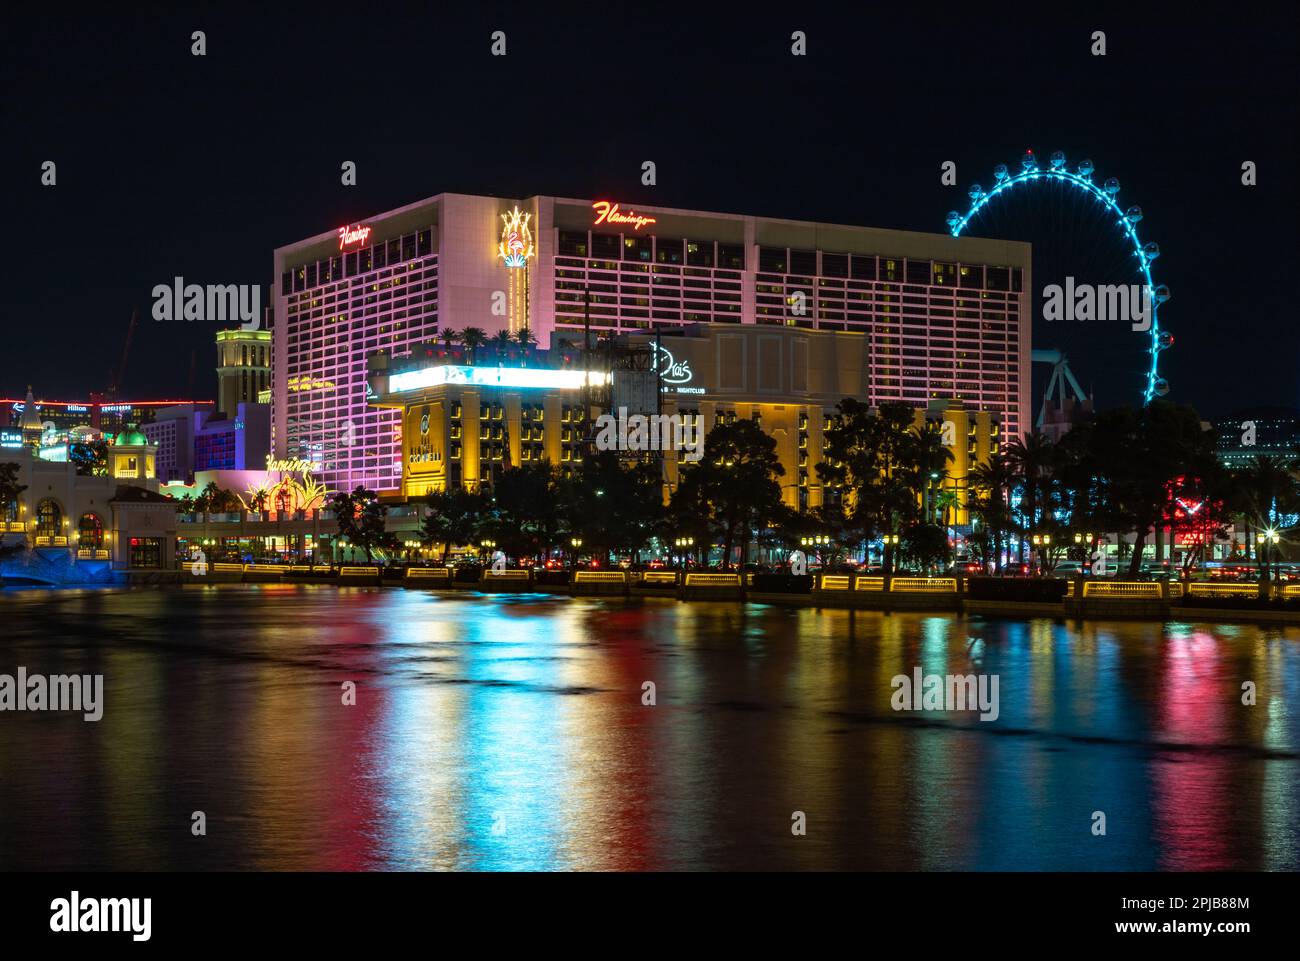 Un'immagine del Flamingo Las Vegas Hotel and Casino di notte, riflessa sulla Fontana Bellagio. Foto Stock